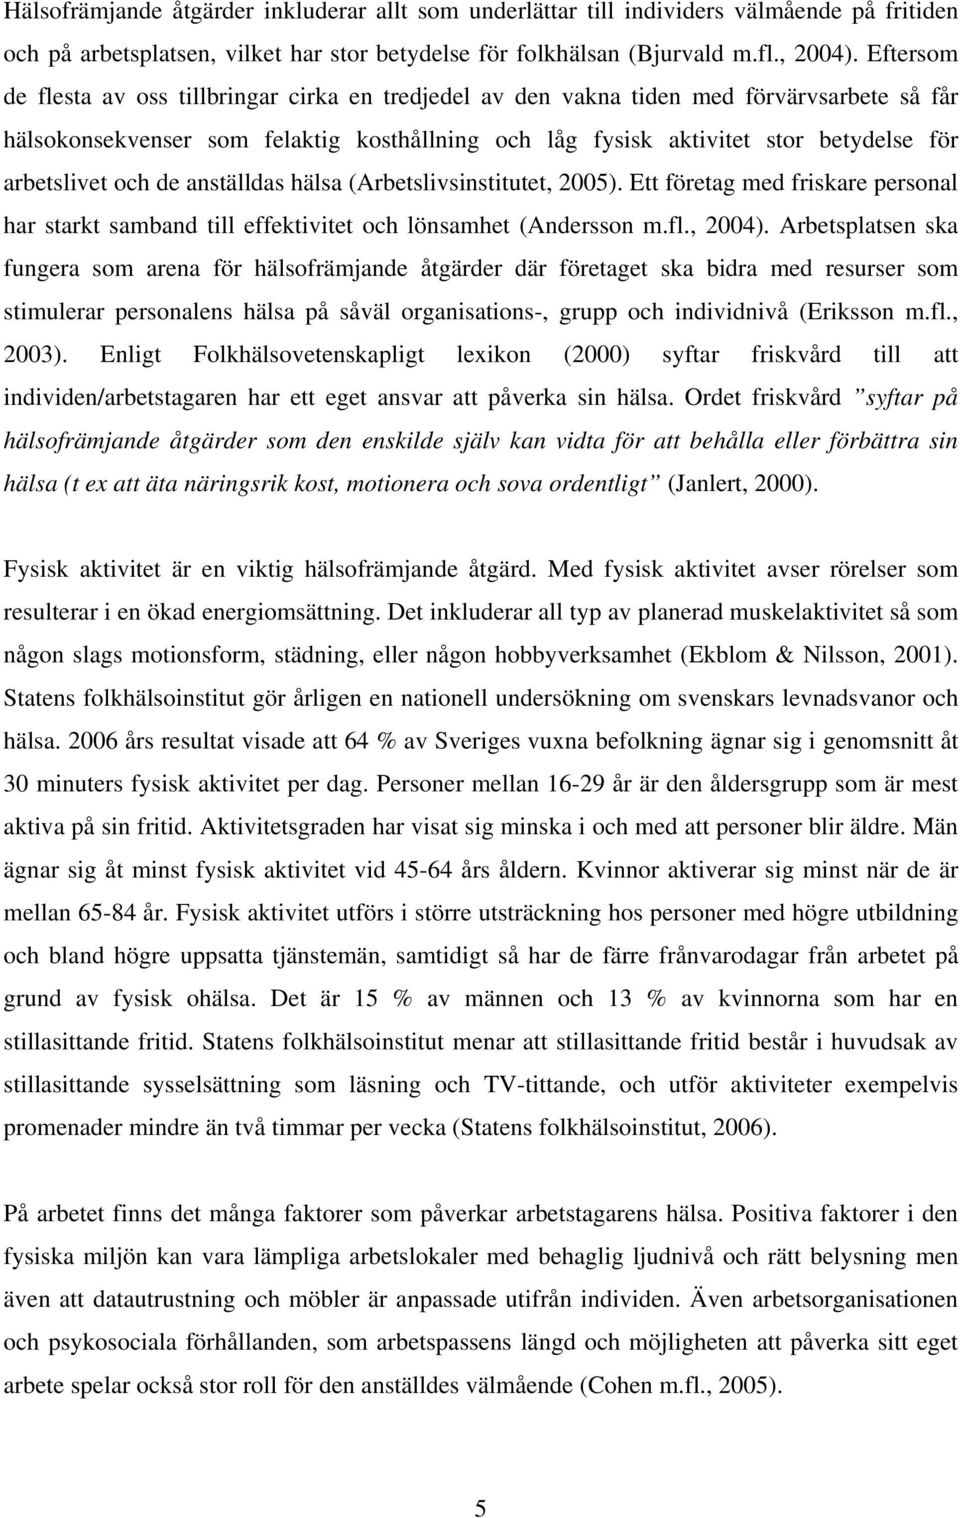 arbetslivet och de anställdas hälsa (Arbetslivsinstitutet, 2005). Ett företag med friskare personal har starkt samband till effektivitet och lönsamhet (Andersson m.fl., 2004).